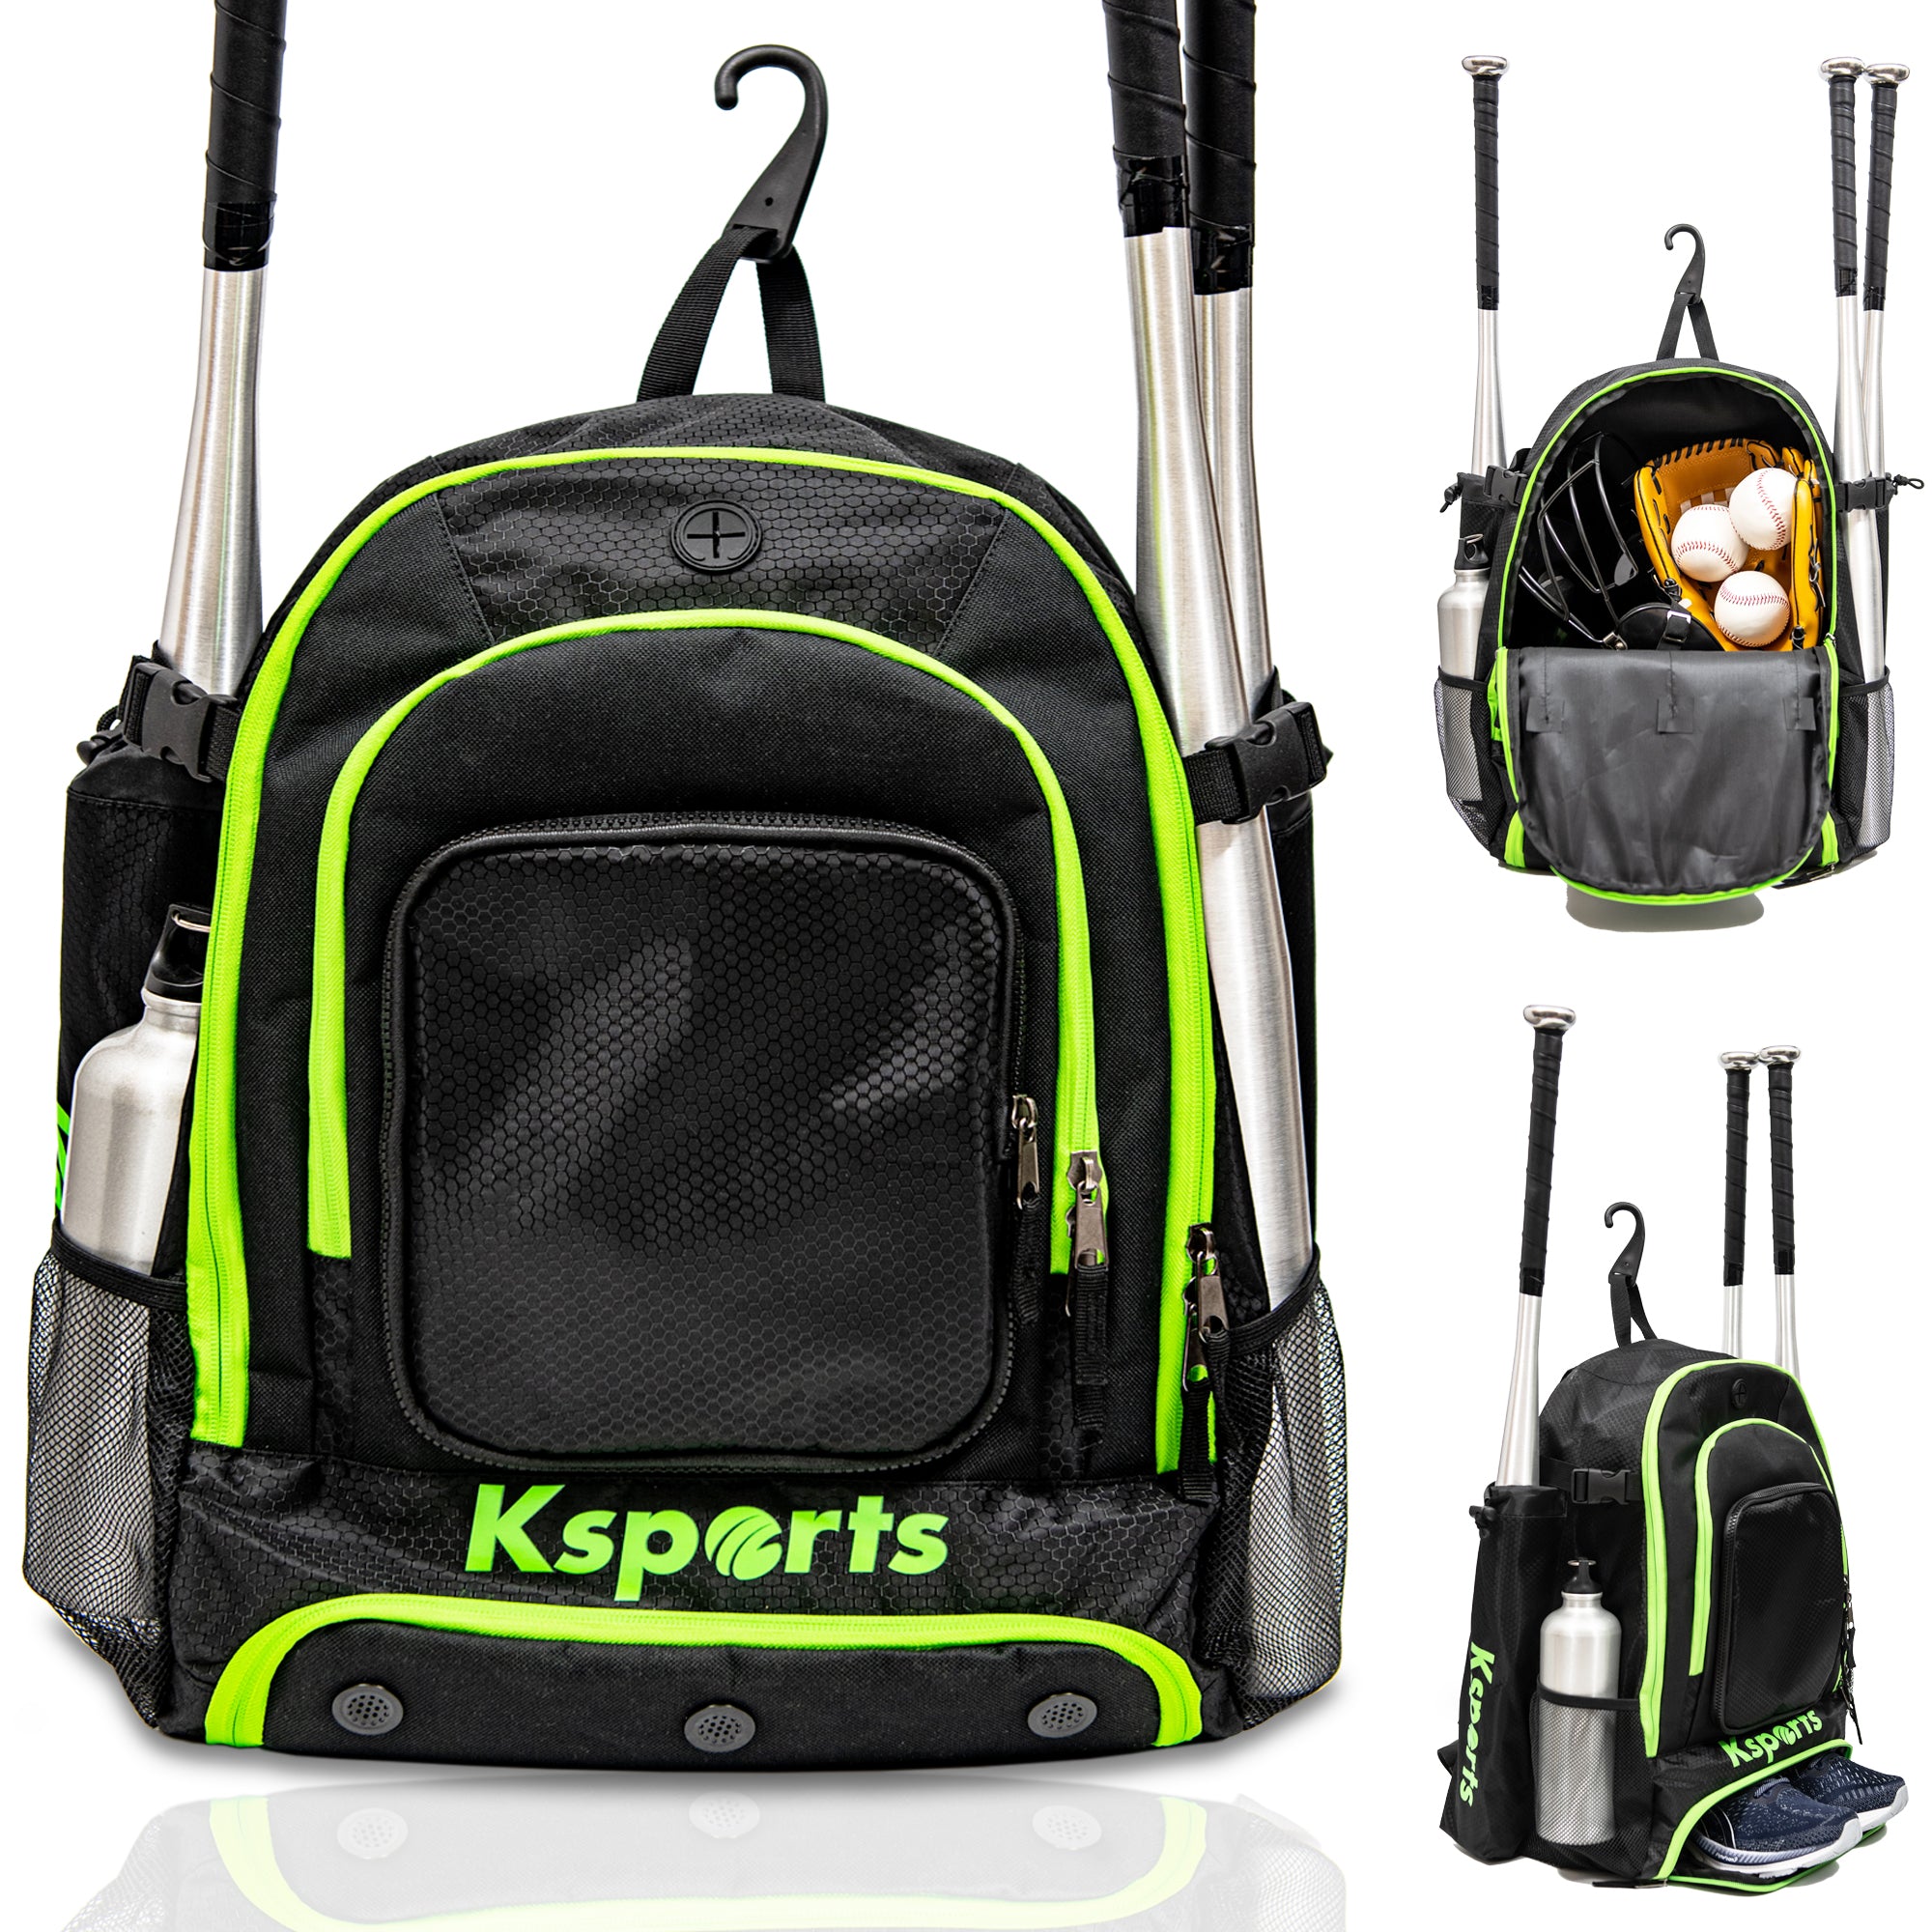 Ksports Baseball Backpack Black with Green Zipper